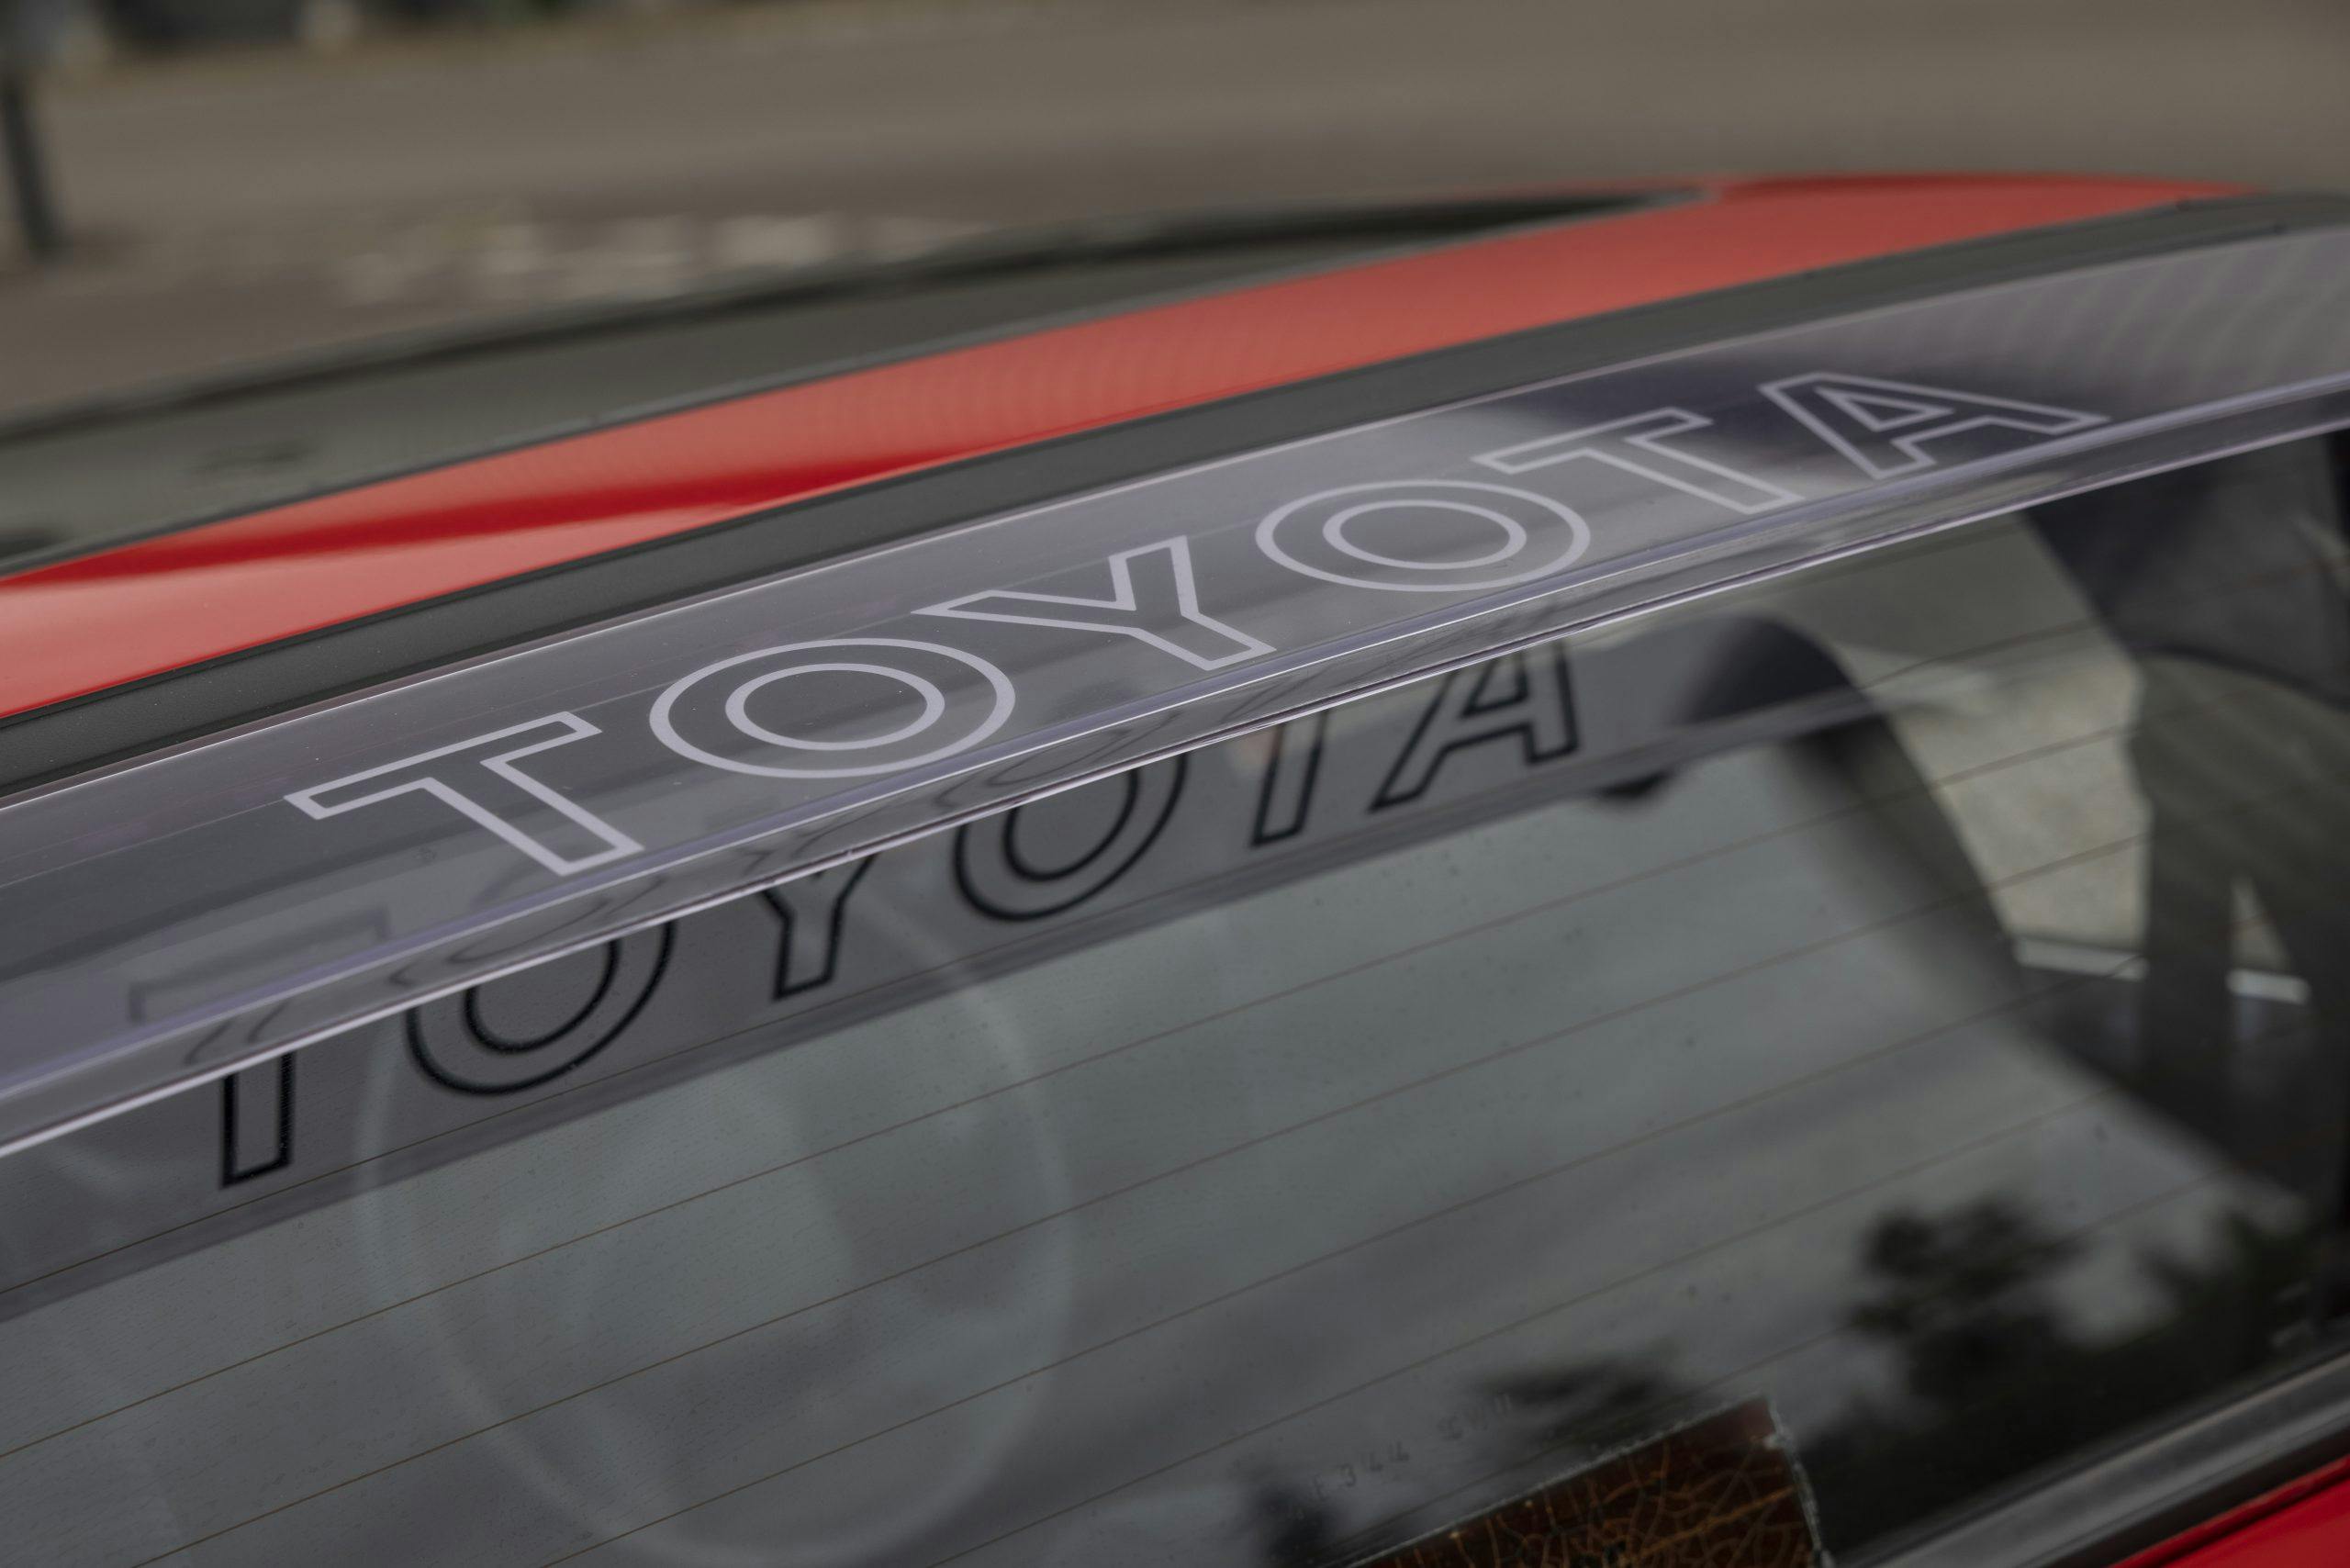 Toyota MR2 visor lettering